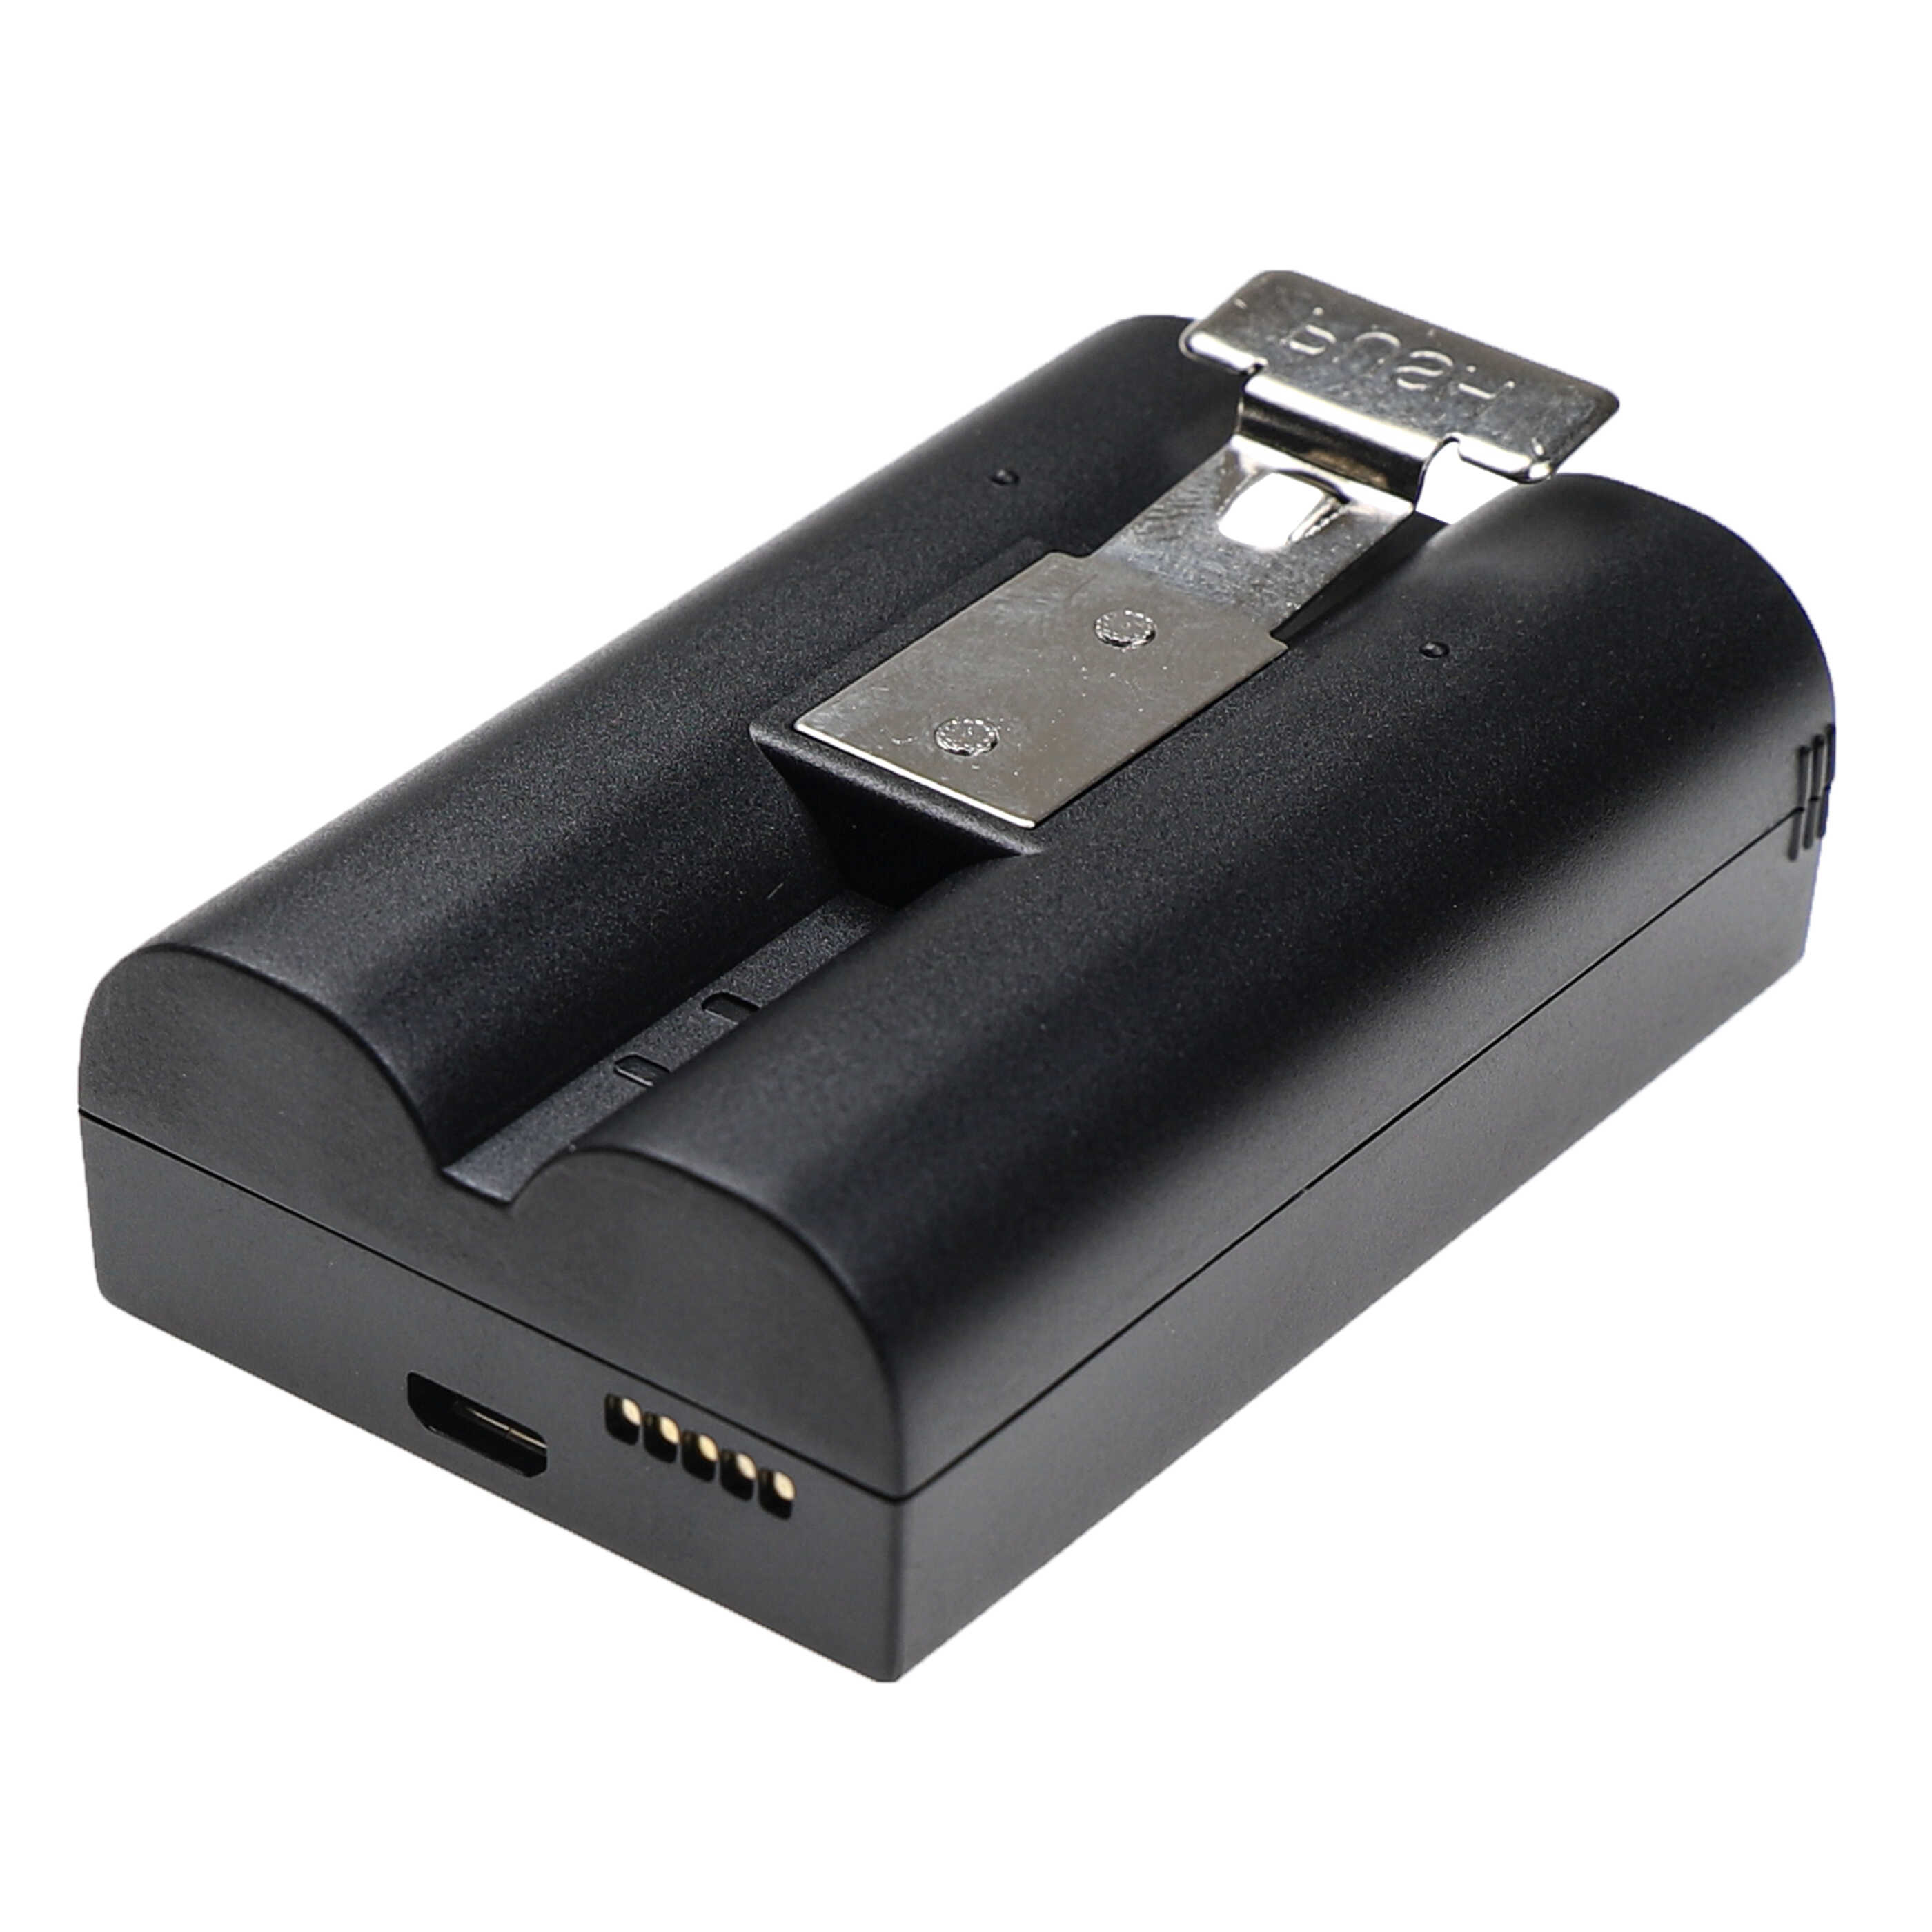 Akumulator do domofonu / wideodomofonu zamiennik Ring 8AB1S7-0EN0 - 6040 mAh 3,65 V Li-Ion